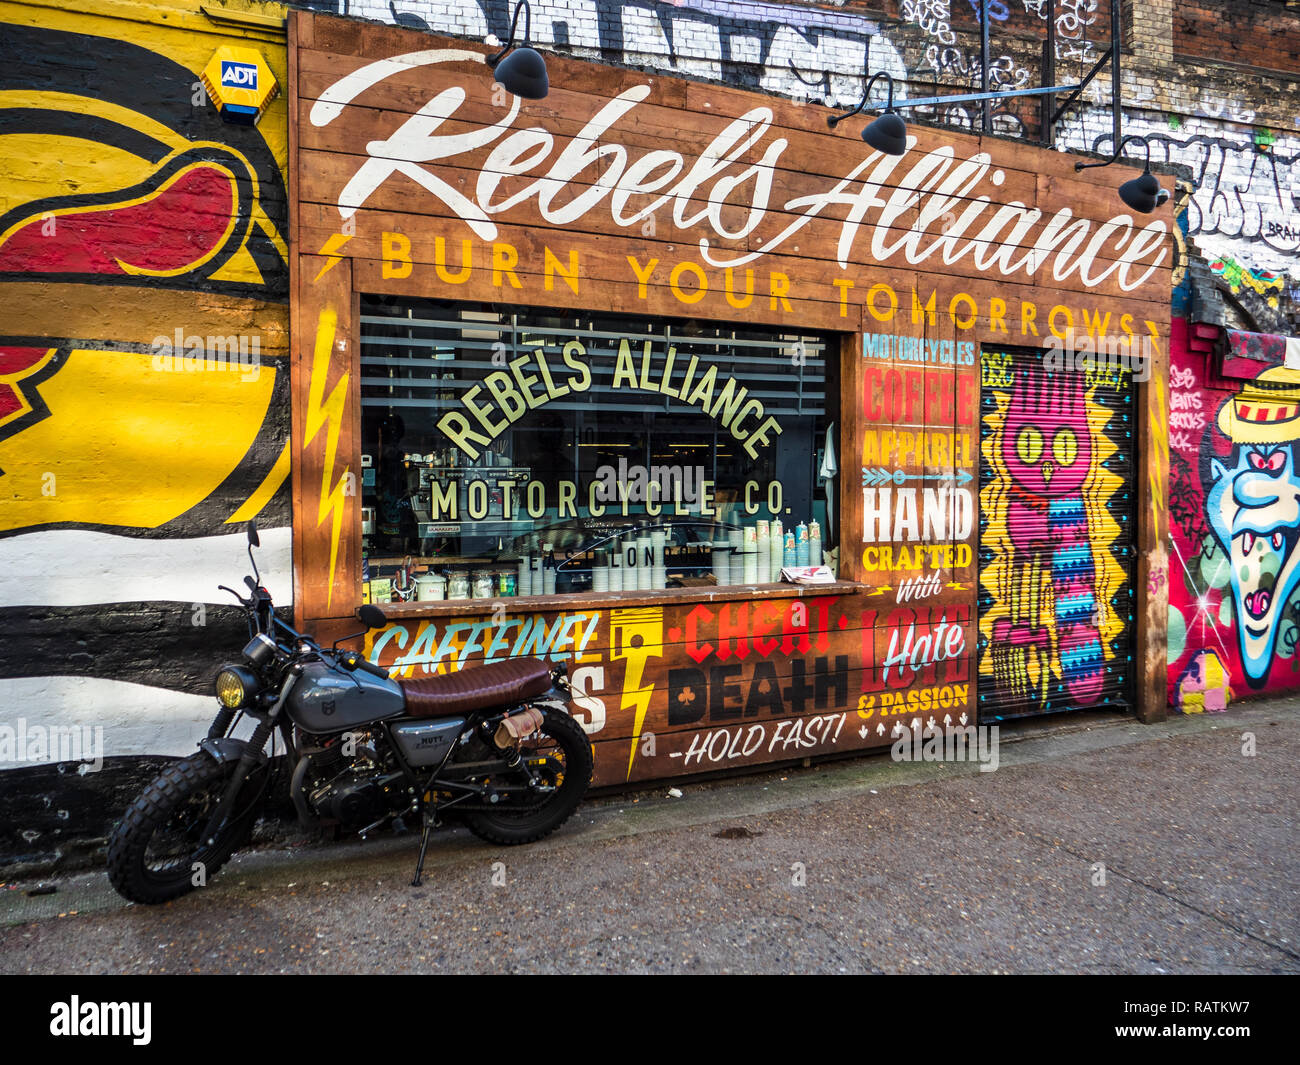 Rebels Alliance Motorcycle Co, tienda de ropa y café en HIP Shoreditch East London cerca de Brick Lane. Motocicletas hechas a medida. Foto de stock